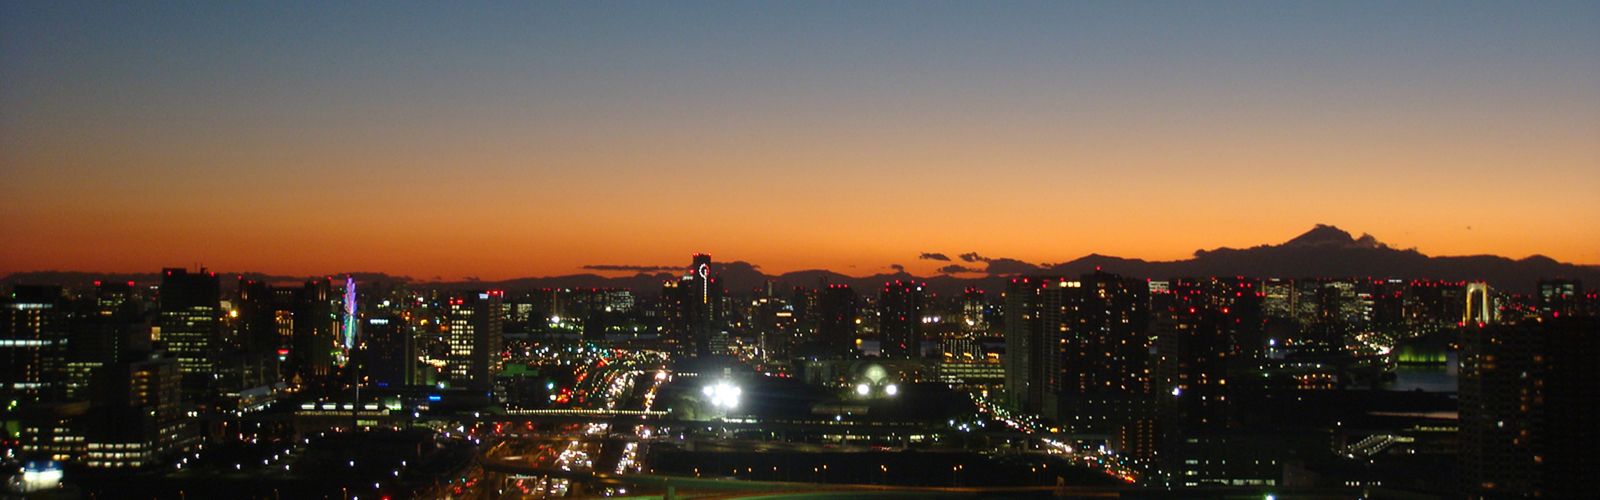 東雲タワー整体から観た夜景写真